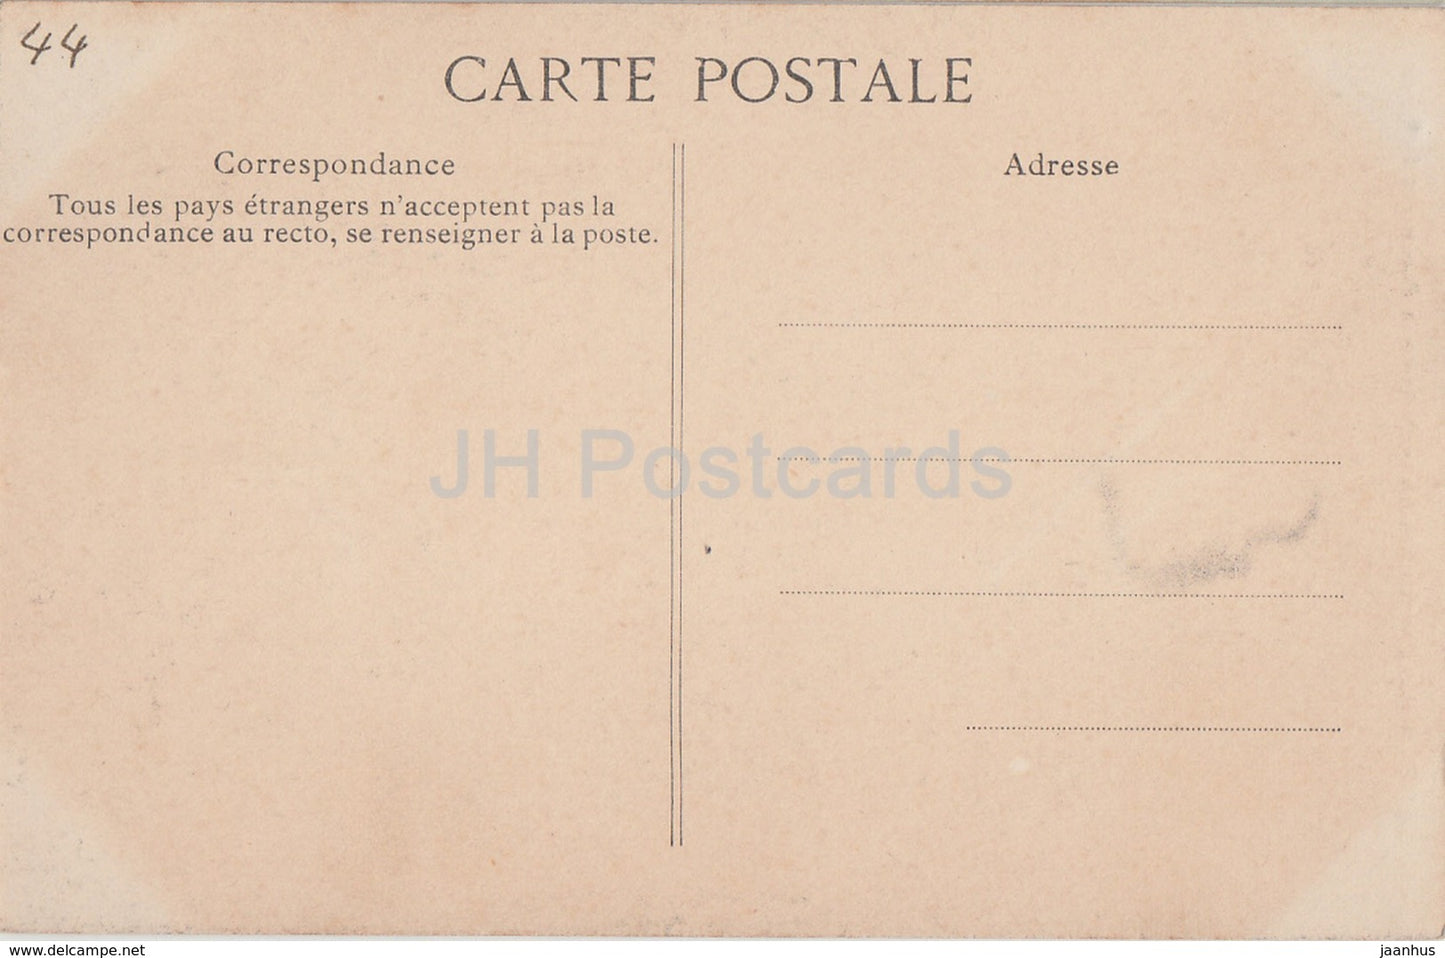 Clisson - Le Château - Porte de la Prison des Hommes - prison - château - carte postale ancienne - France - inutilisée